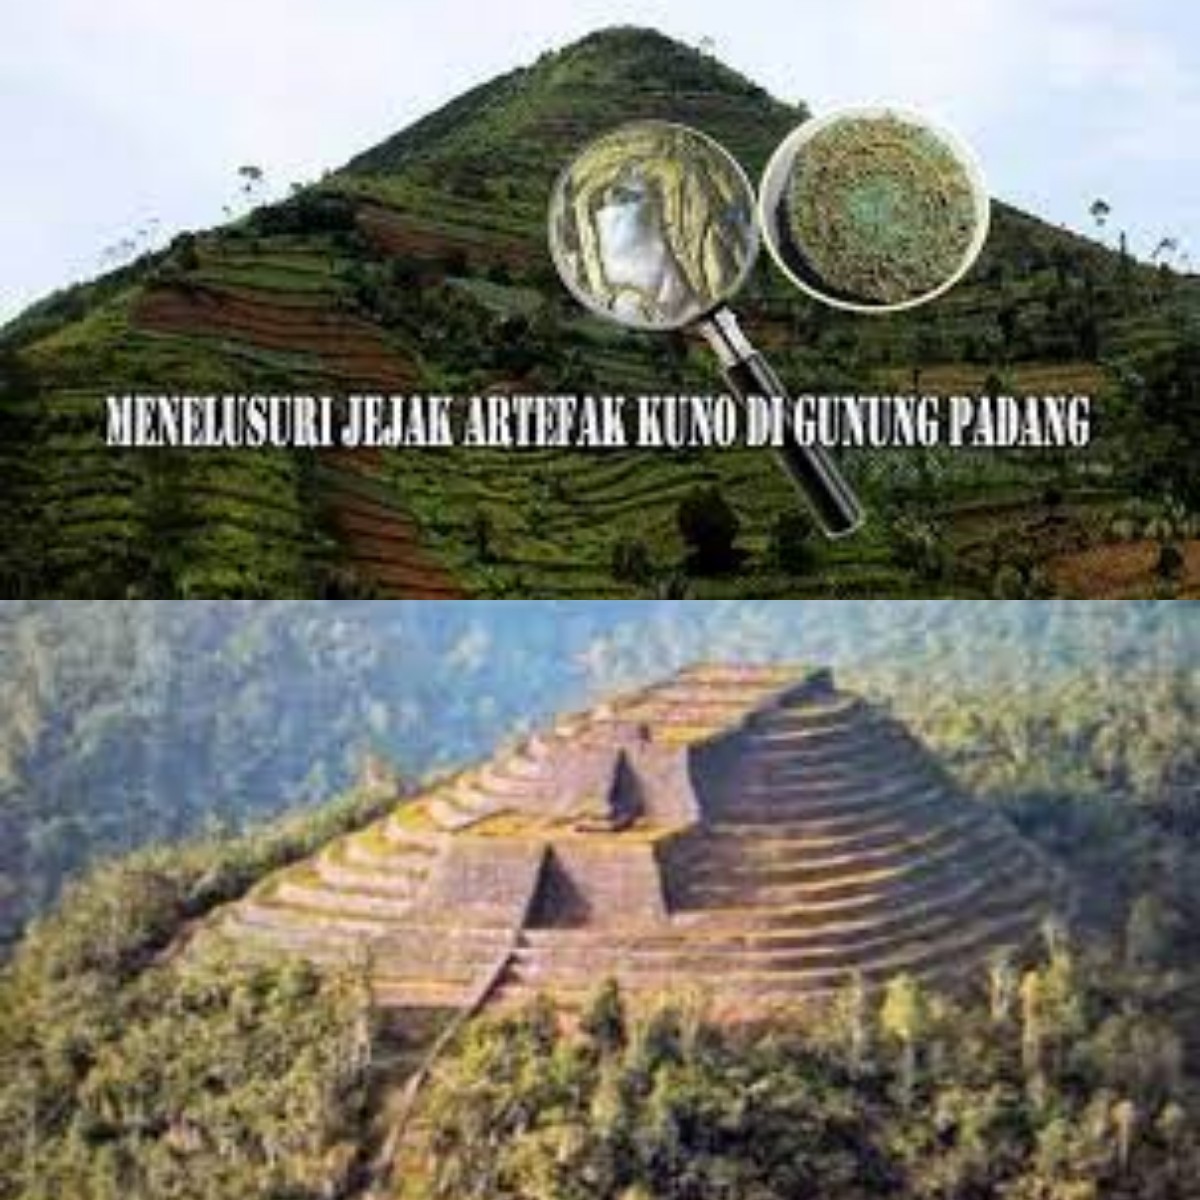 Berikut Penemuan Prasasti Kuno yang Ditemukan di Gunung Padang 